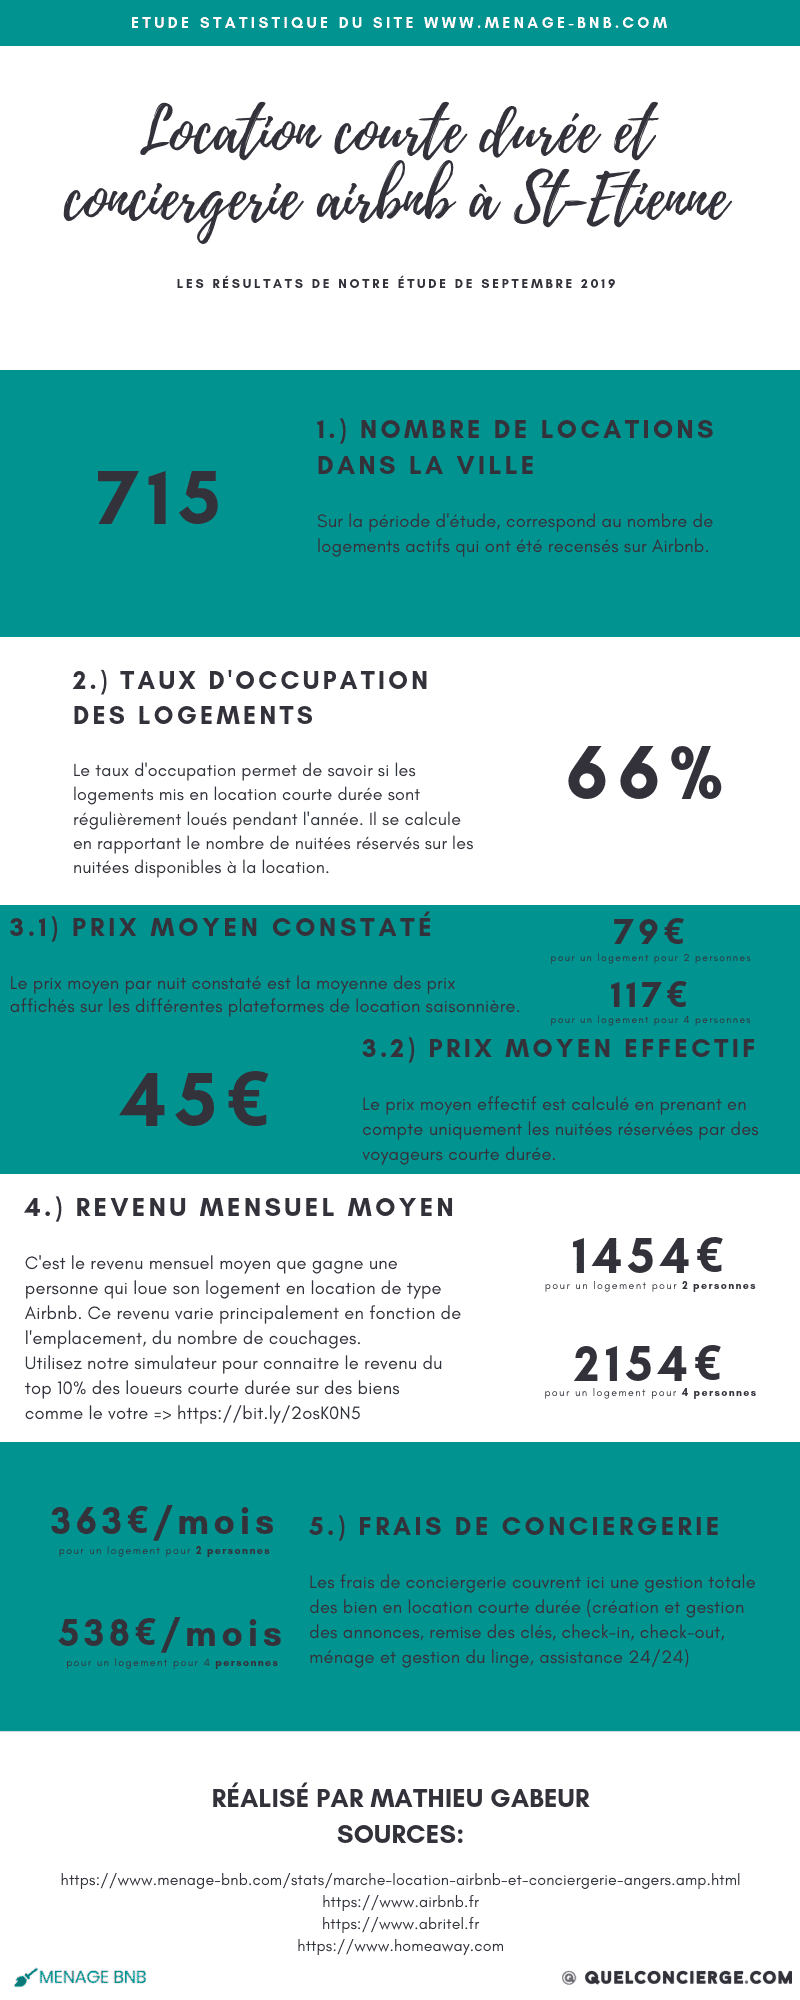 Infographie statistique location courte durée et conciergerie Airbnb à saint etienne